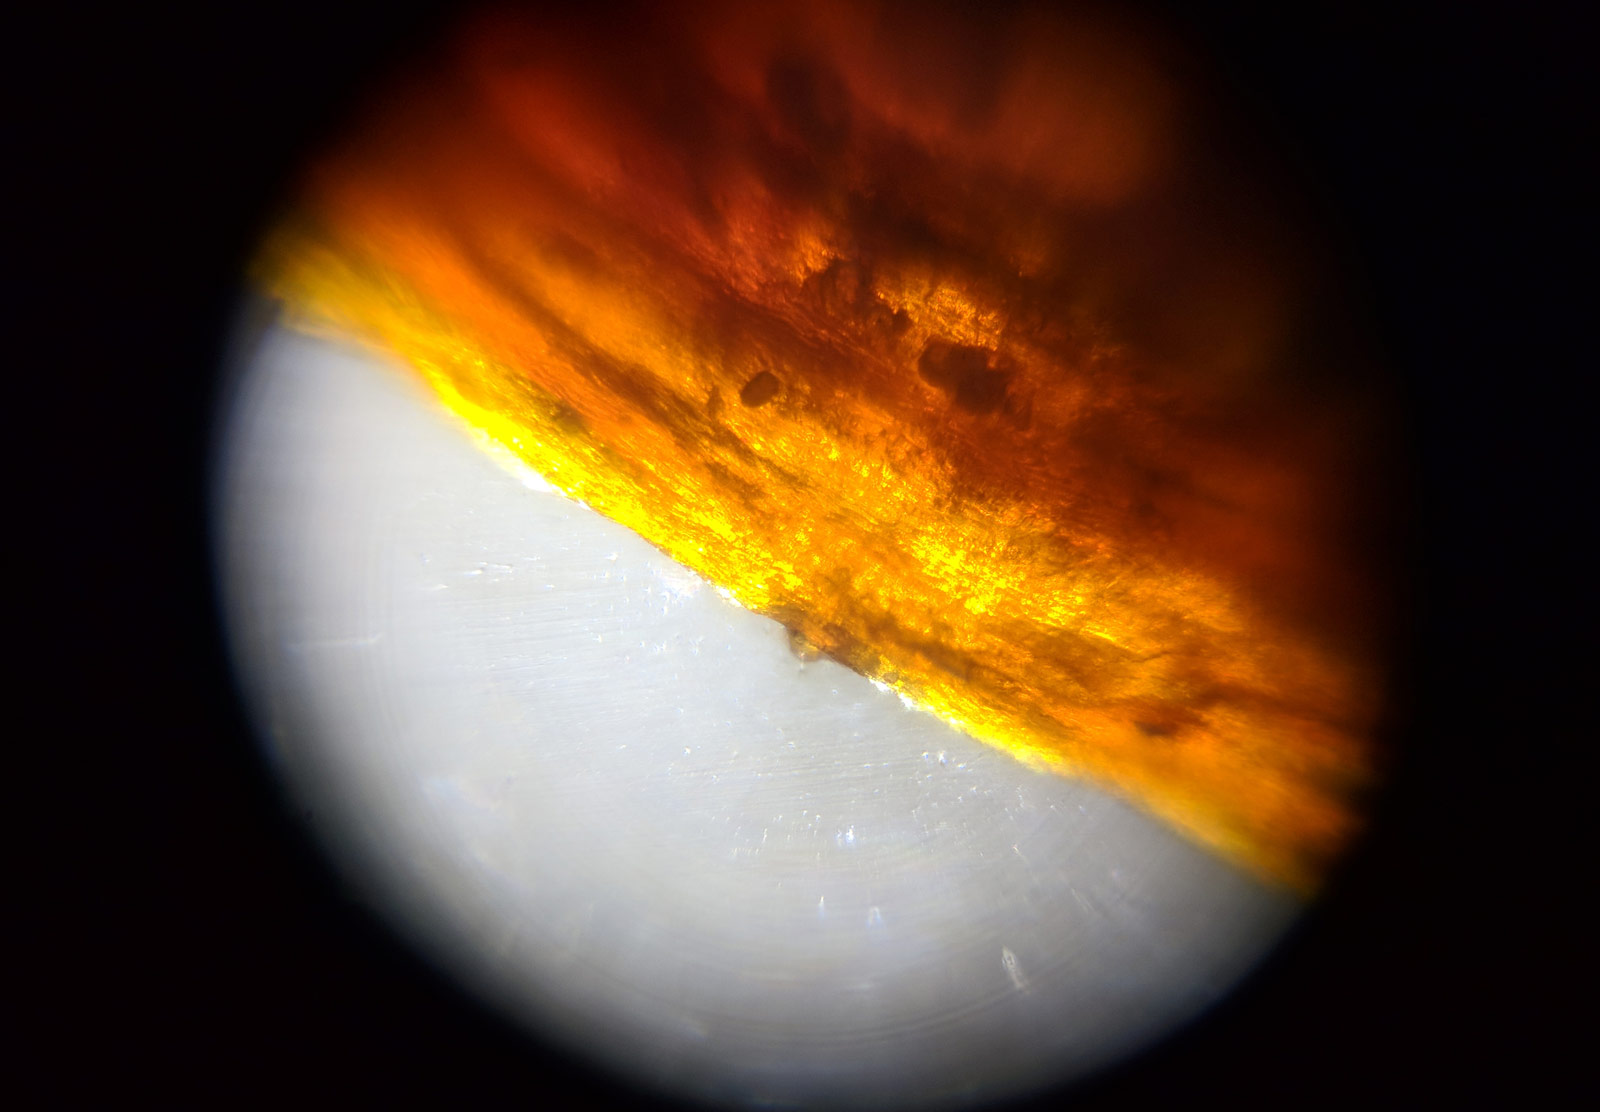 Saffron strand under microscope